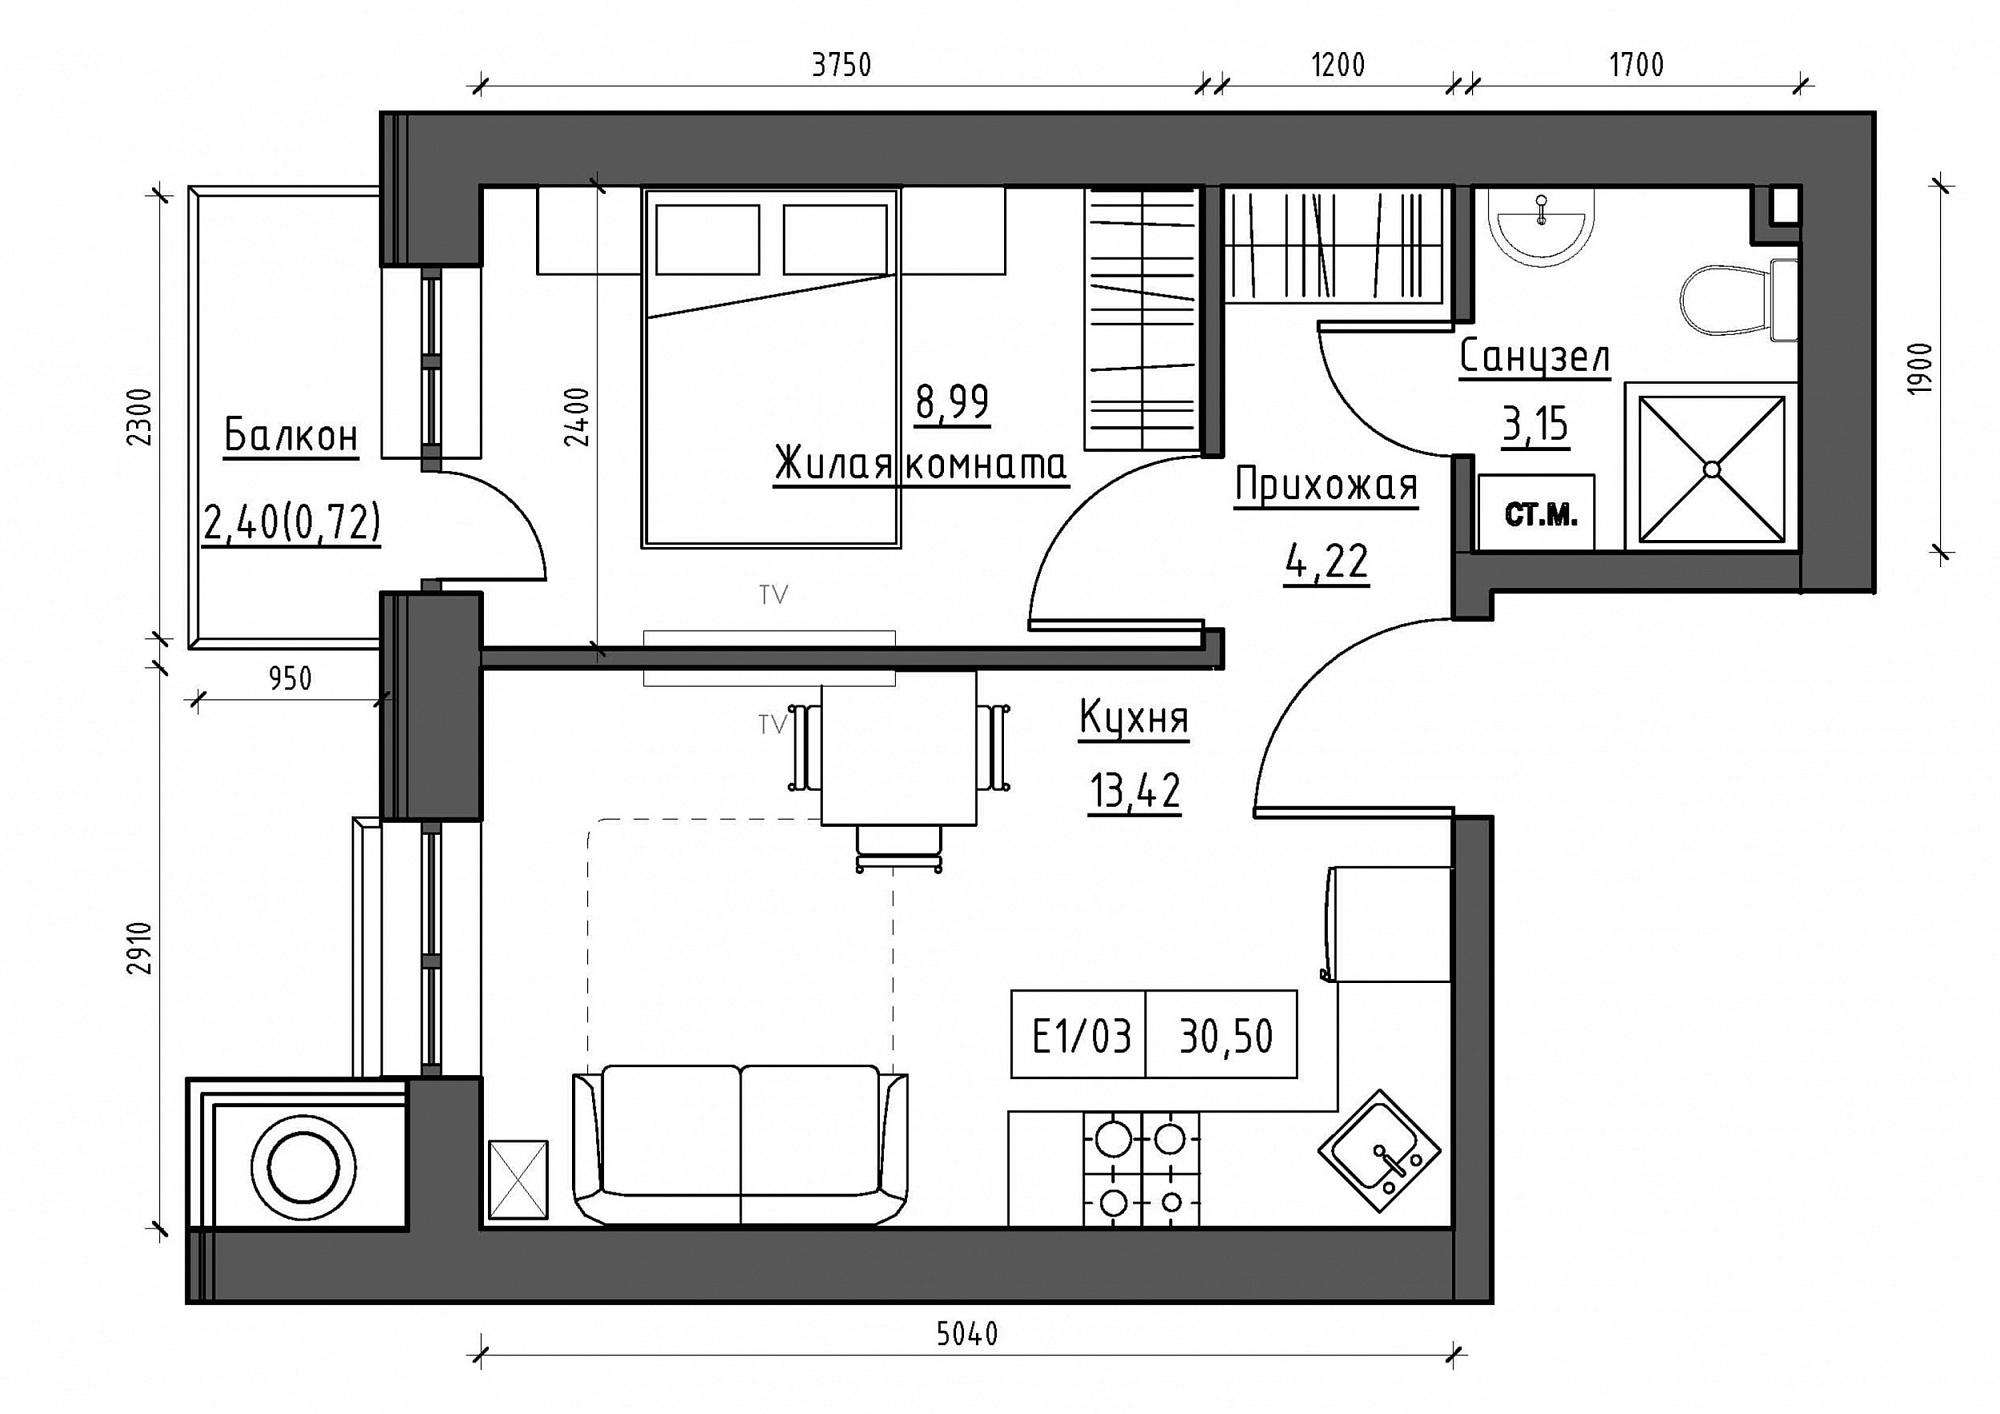 Планування 1-к квартира площею 30.5м2, KS-011-04/0003.